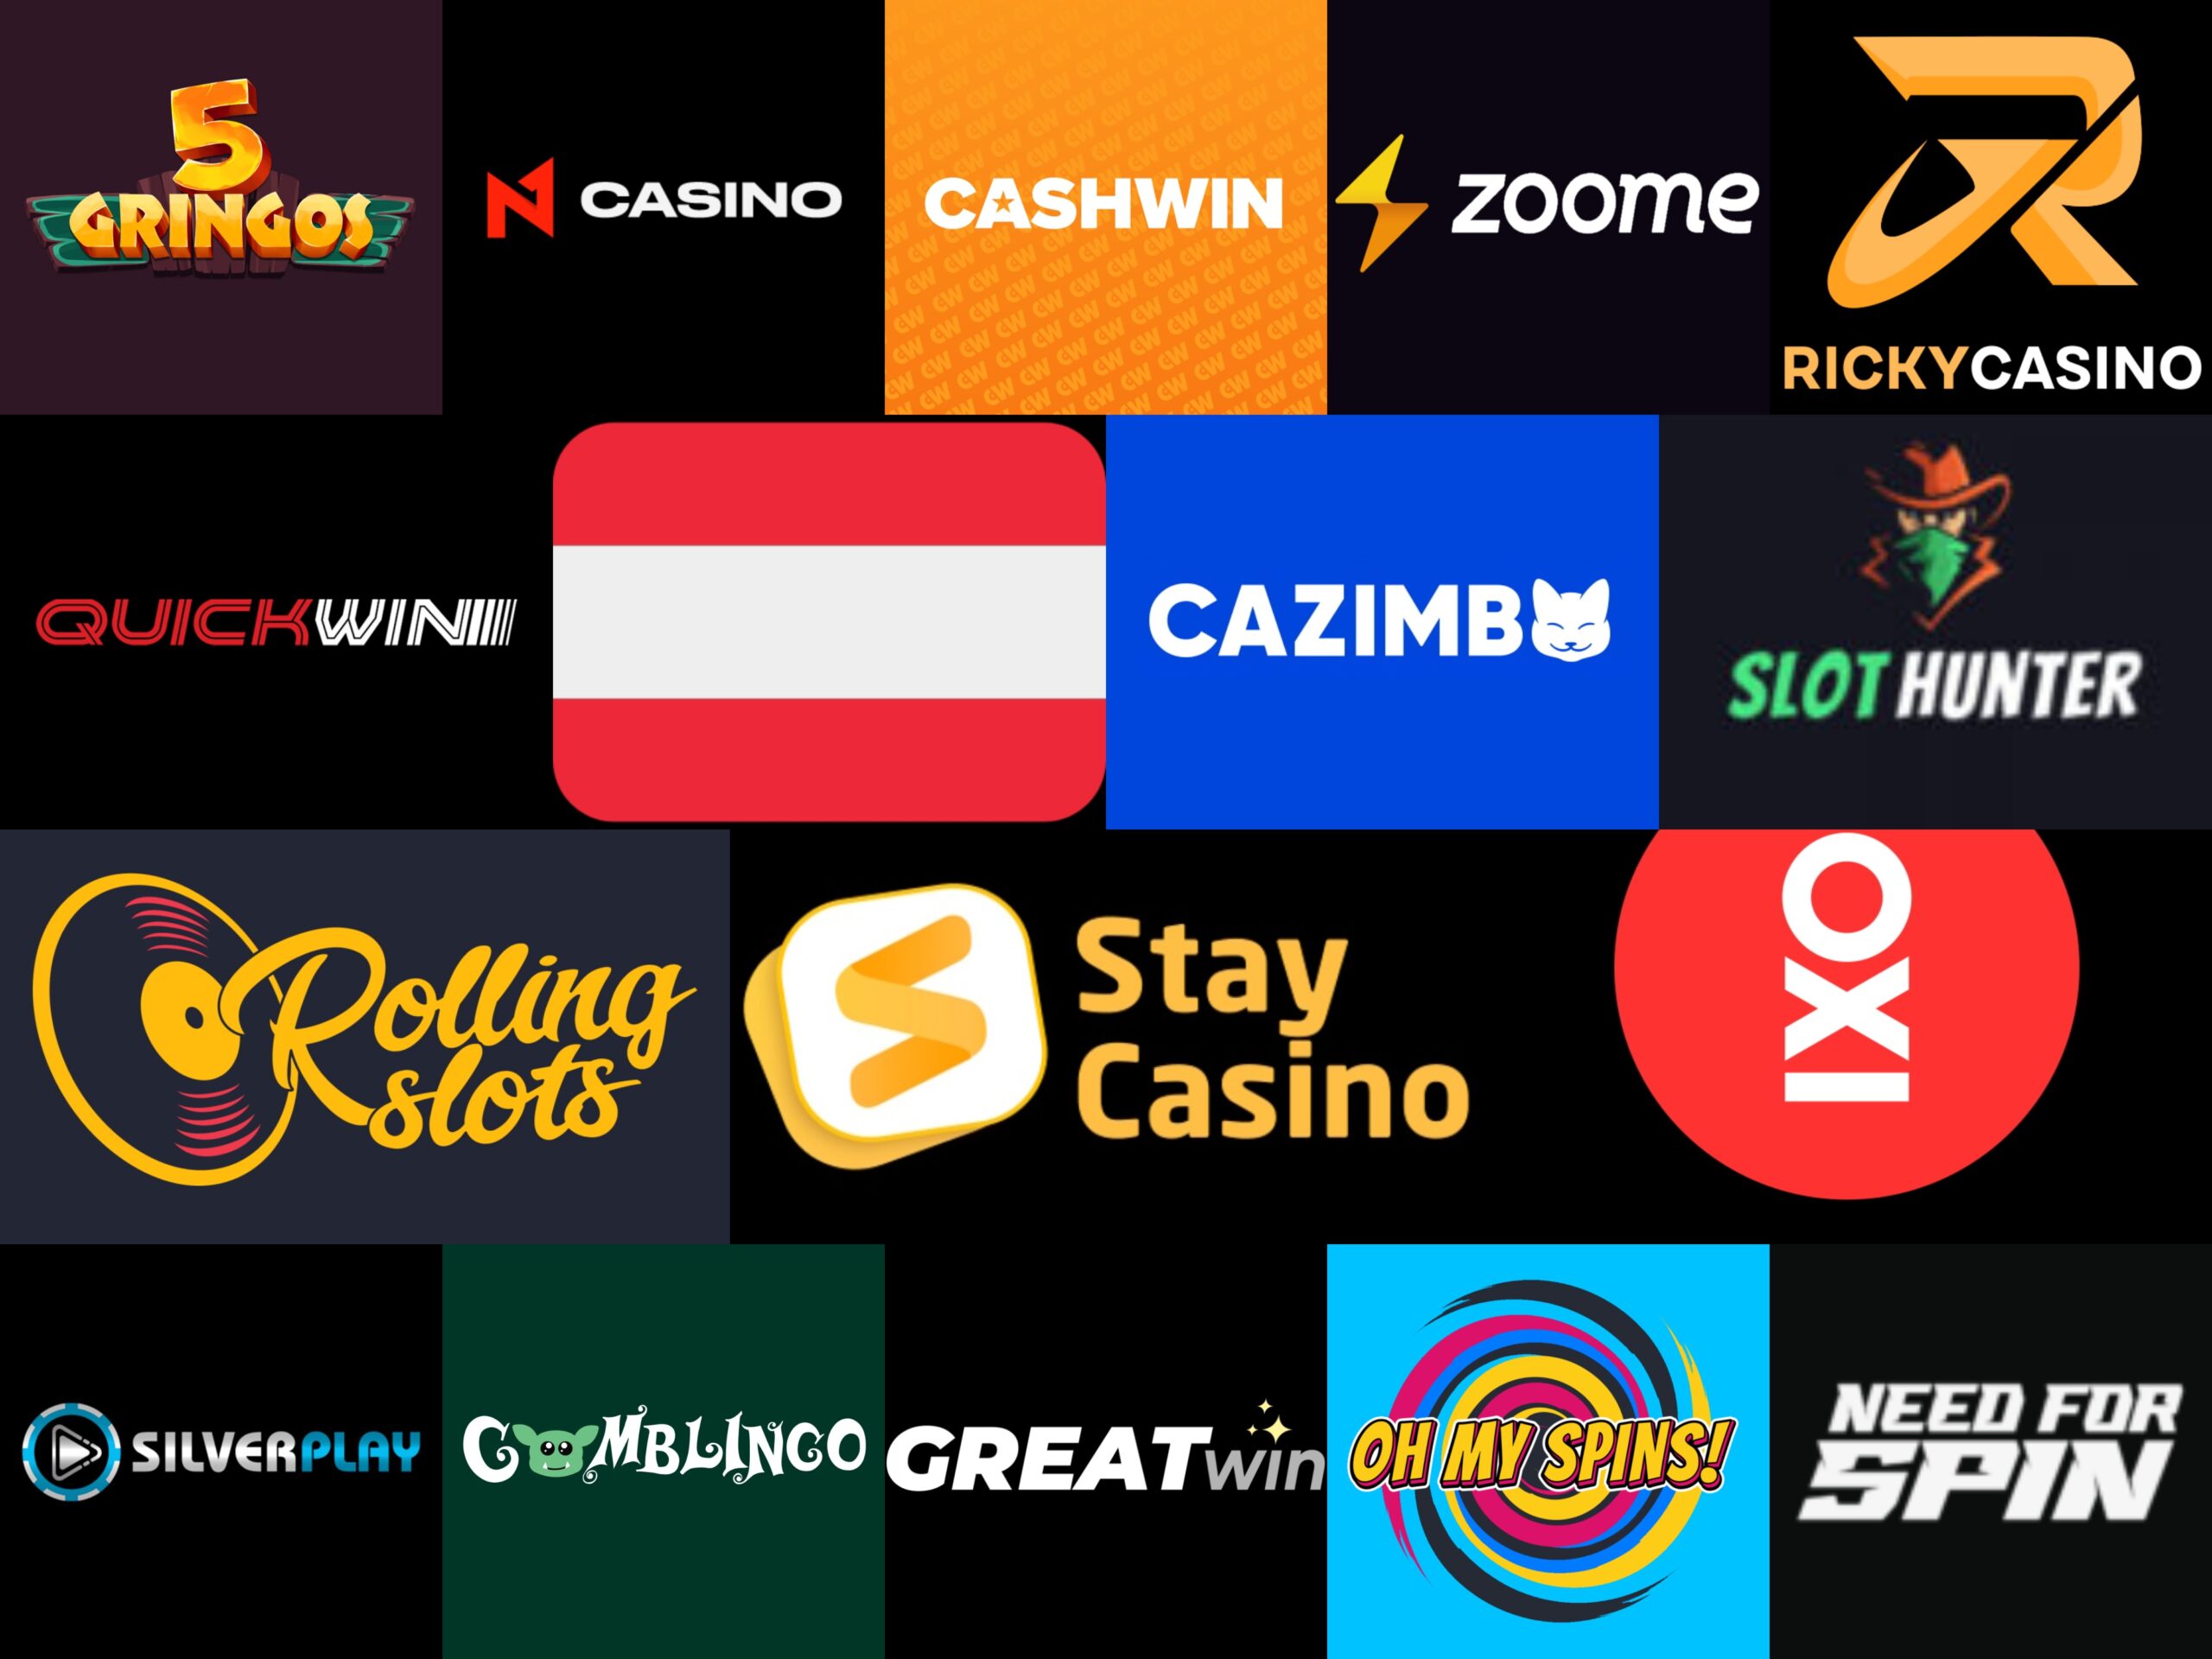 Seriöse Online Casinos Österreich führt nicht zu finanziellem Wohlstand